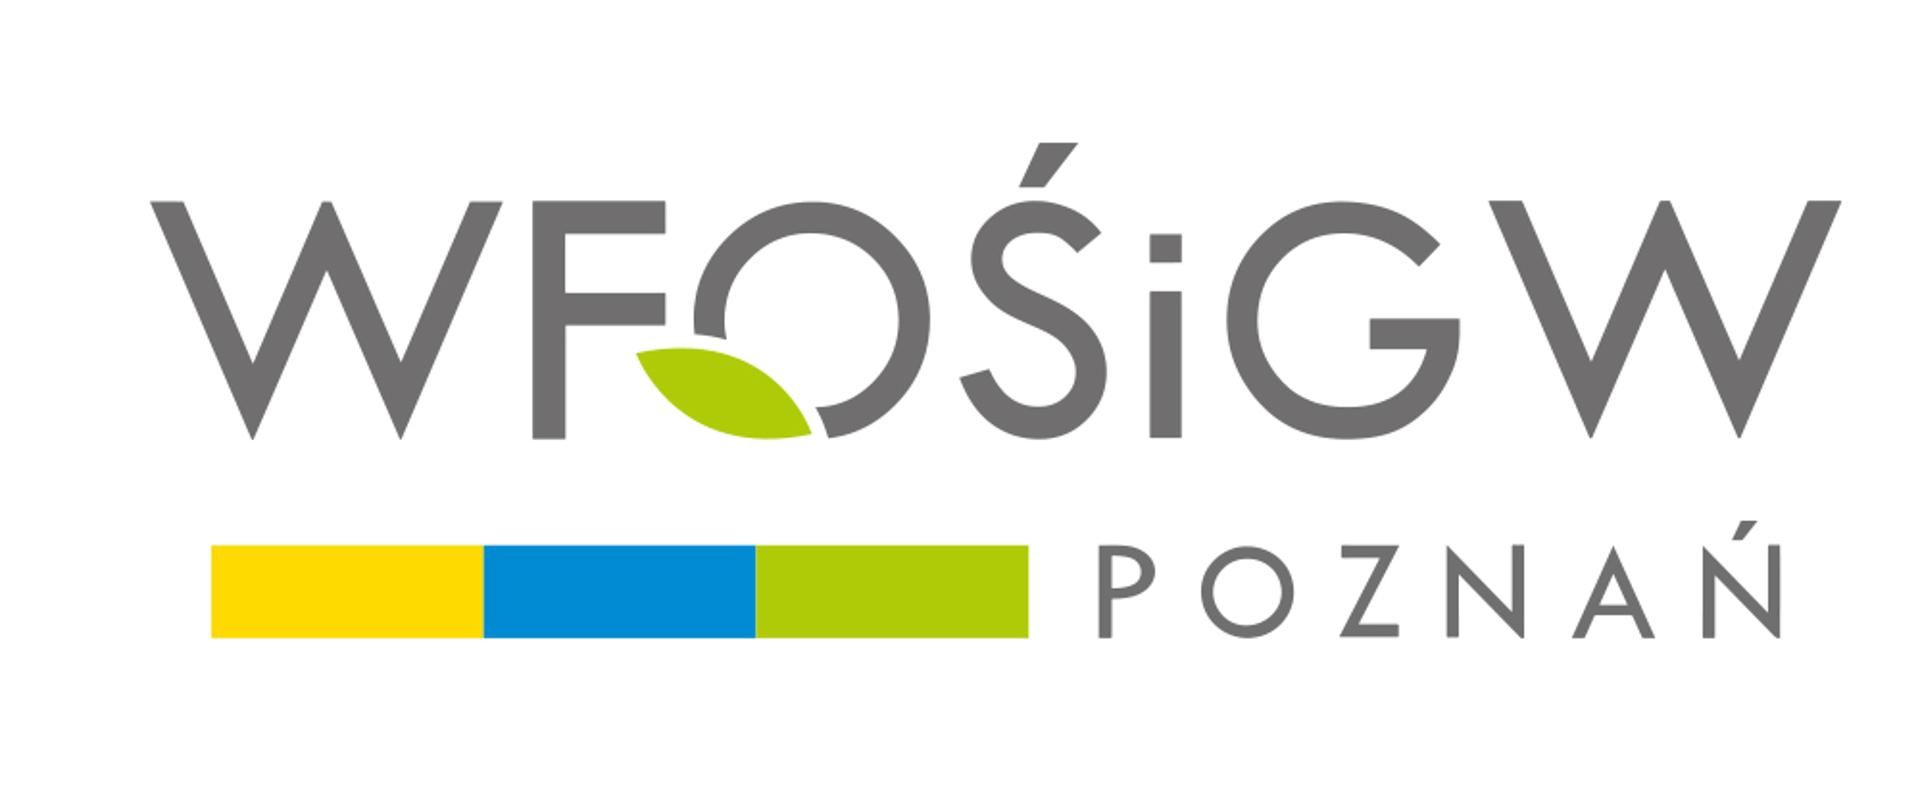 Na zdjęciu widnieje logo Wojewódzkiego Funduszu Ochrony Środowiska i Gospodarki Wodnej w Poznaniu. 